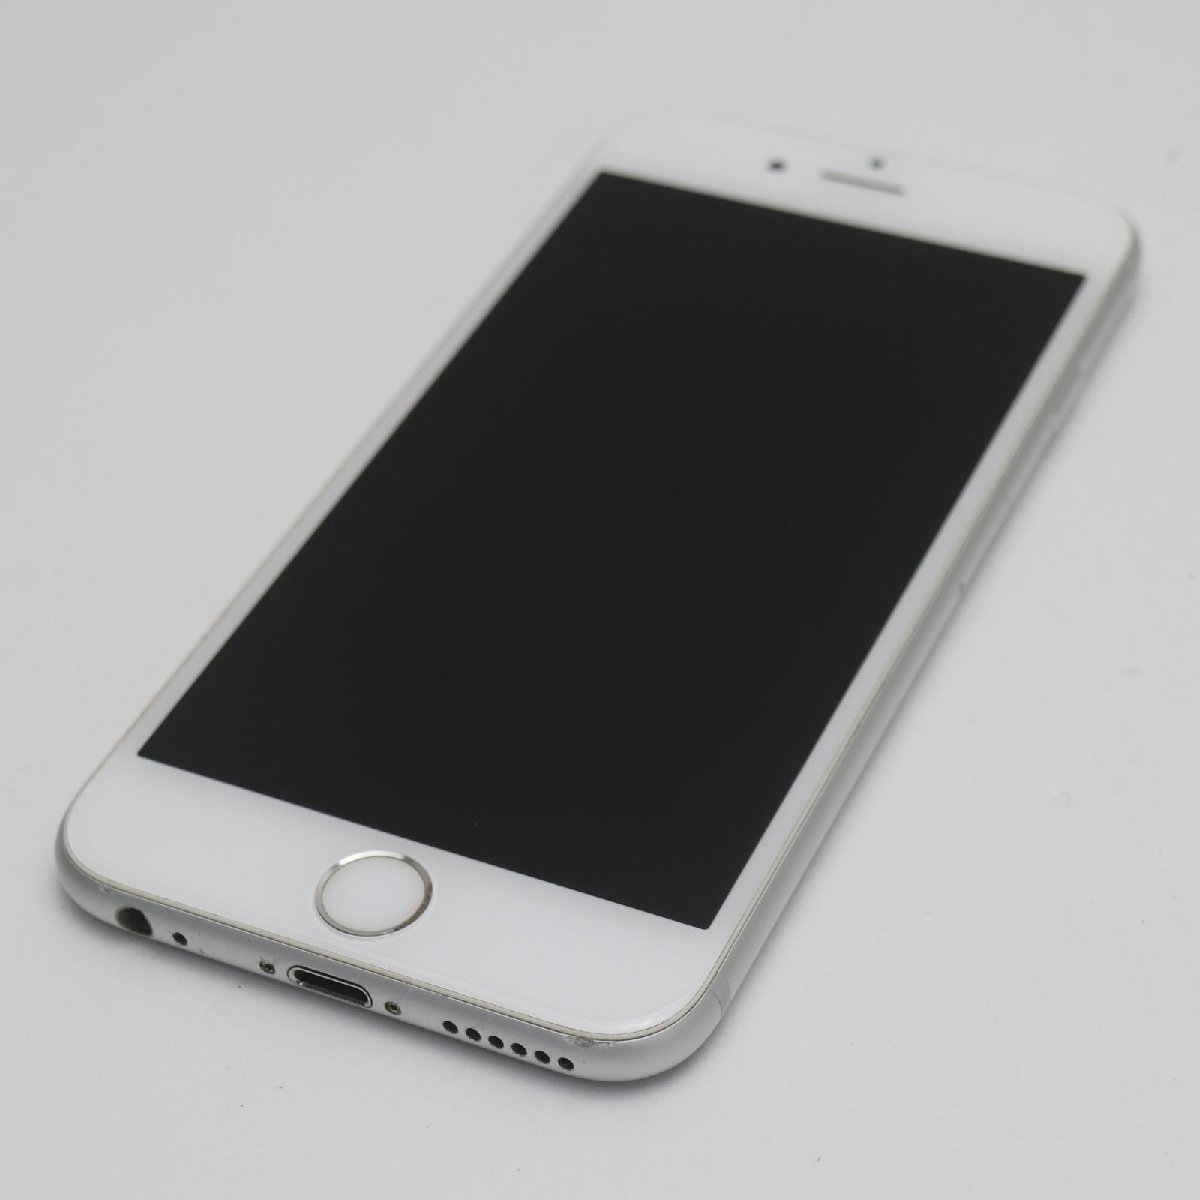 日本限定 即日発送 シルバー 64GB iPhone6S SIMフリー 美品 スマホ